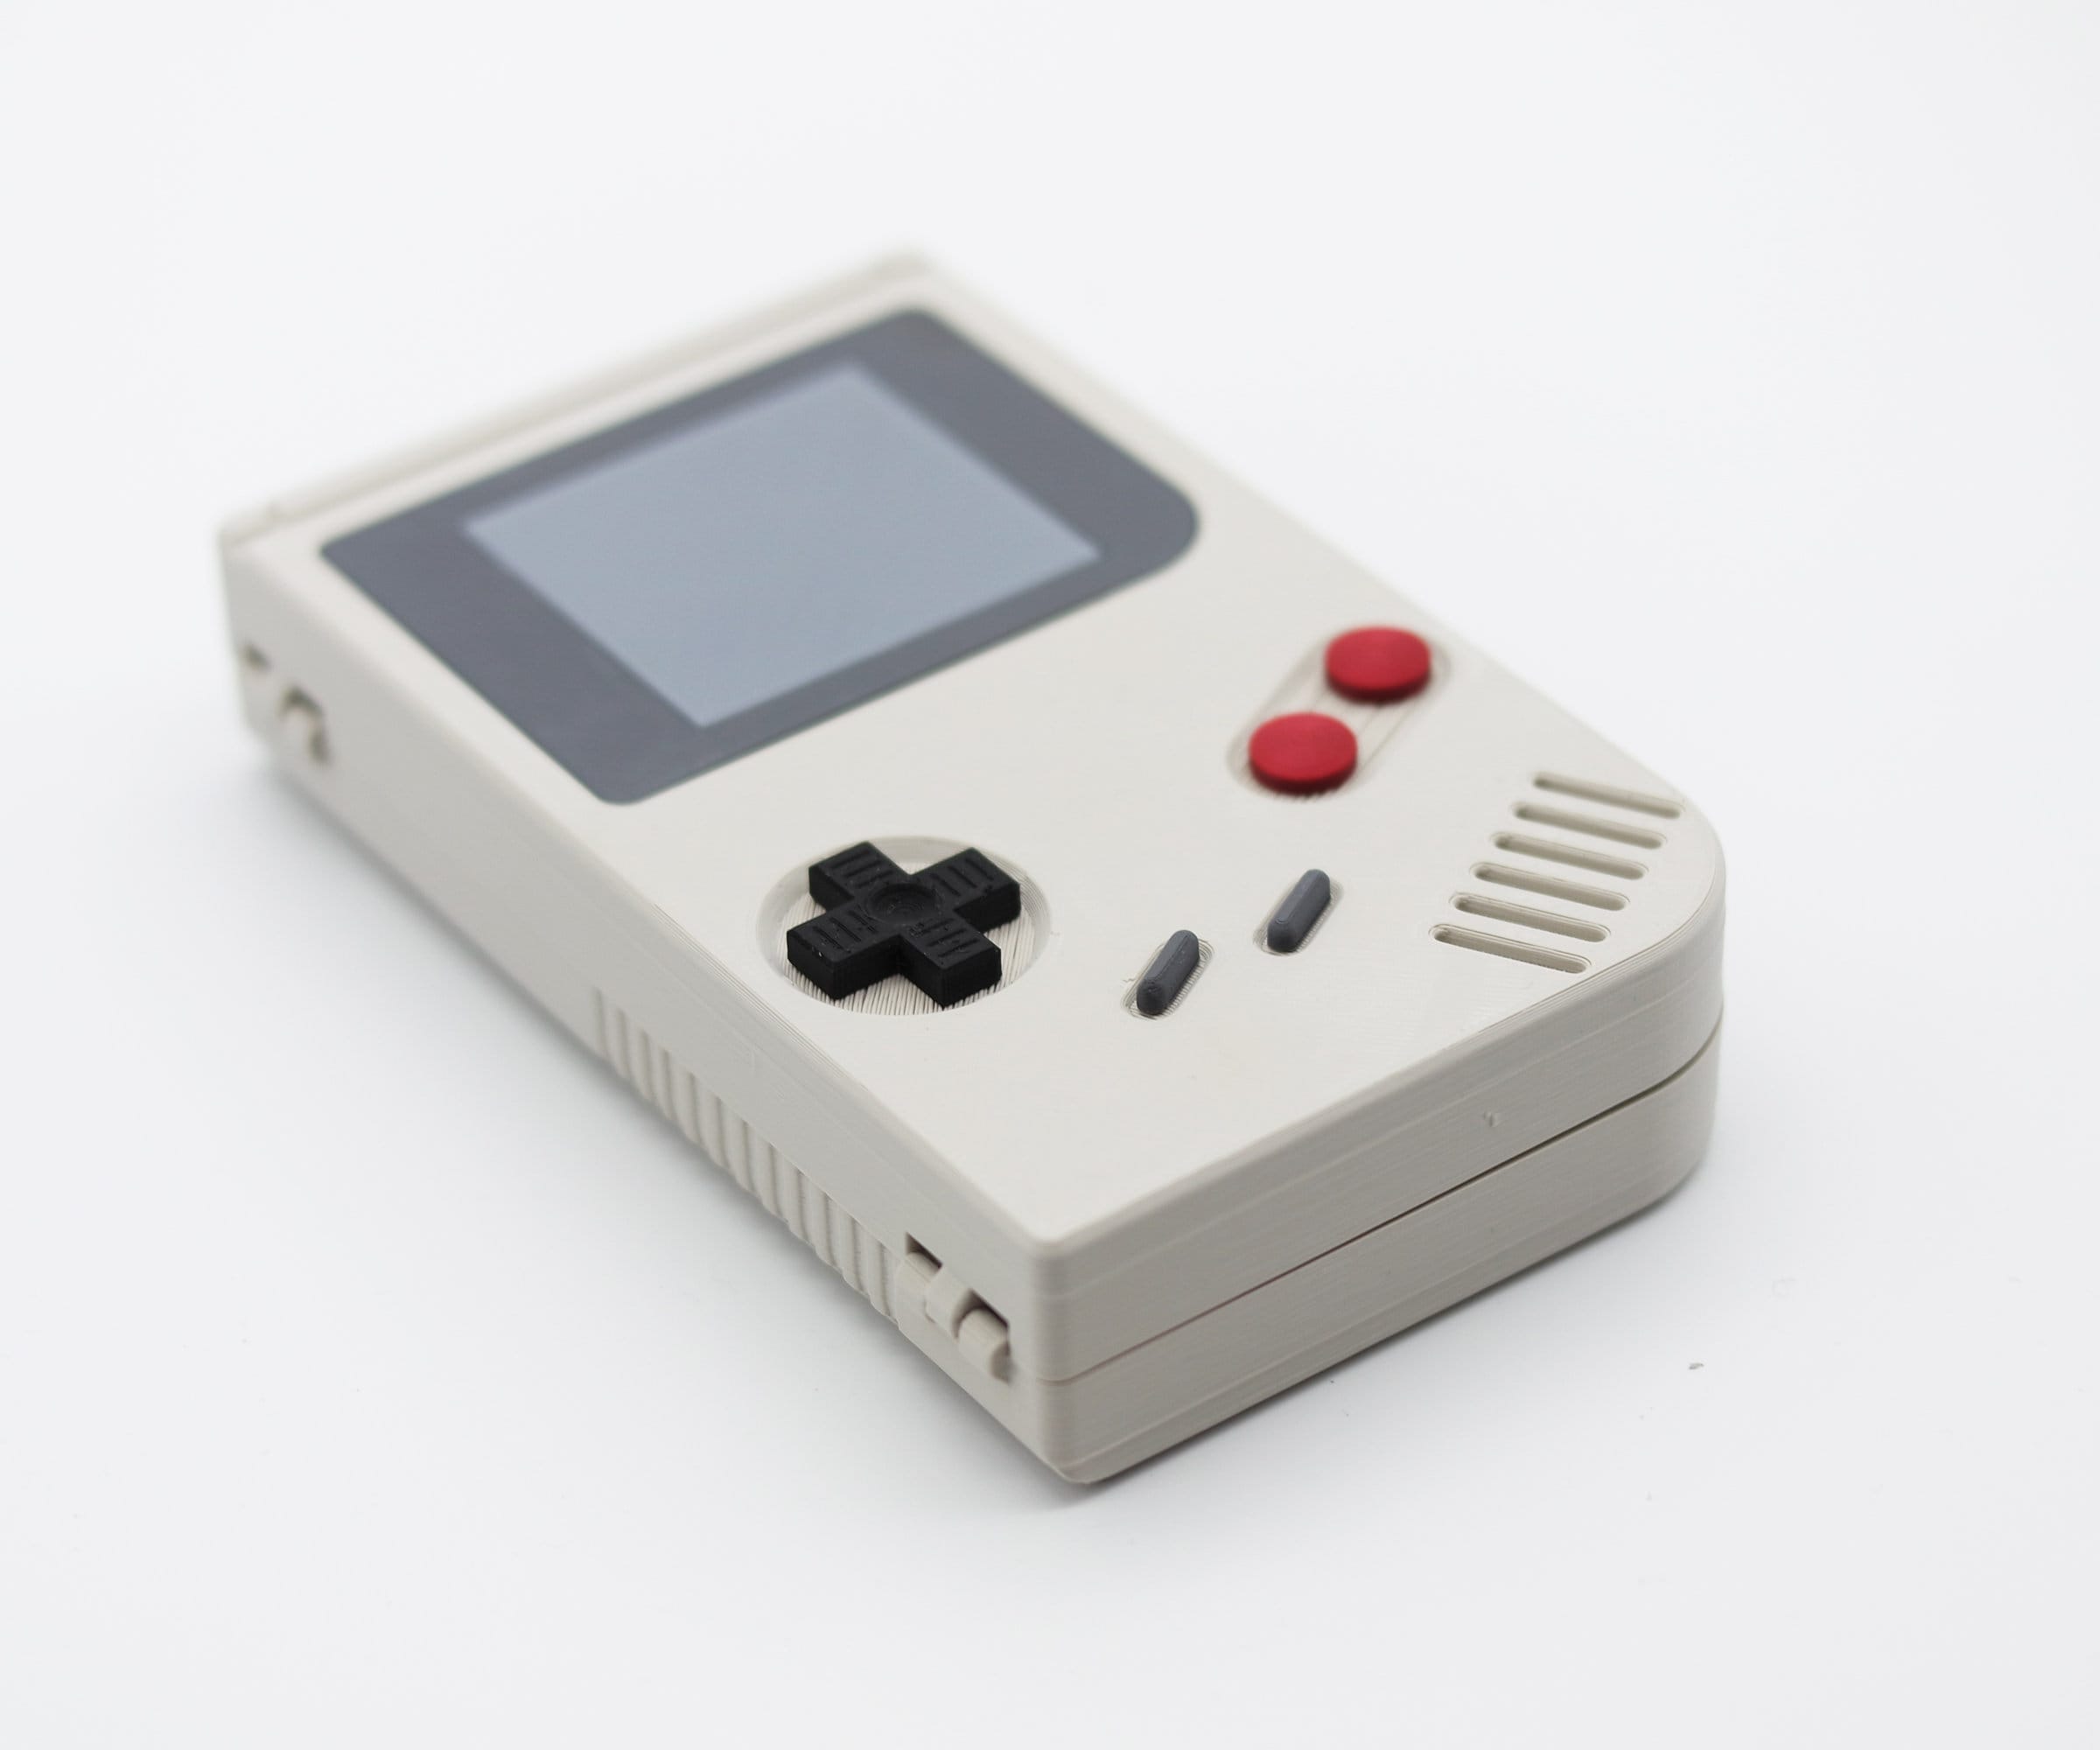 Console - Nintendo Switch com case + jogo ( USADO ) - Rodrigo Games